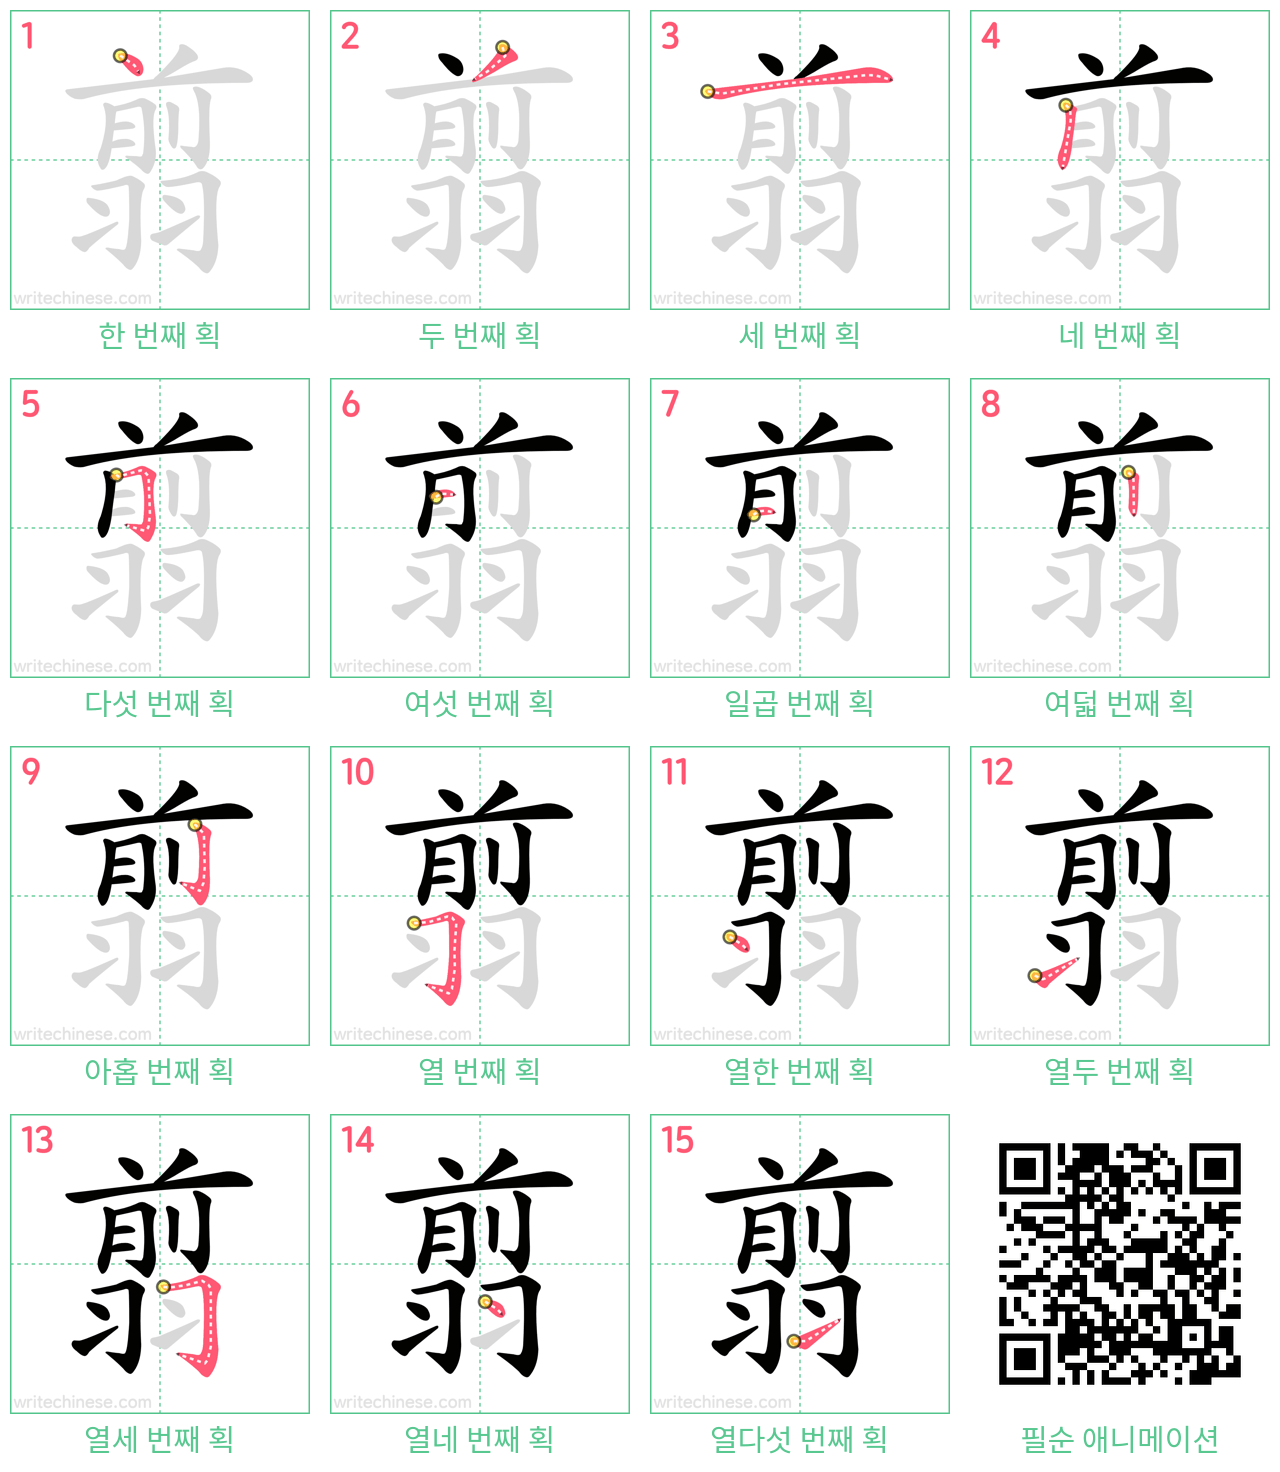 翦 step-by-step stroke order diagrams